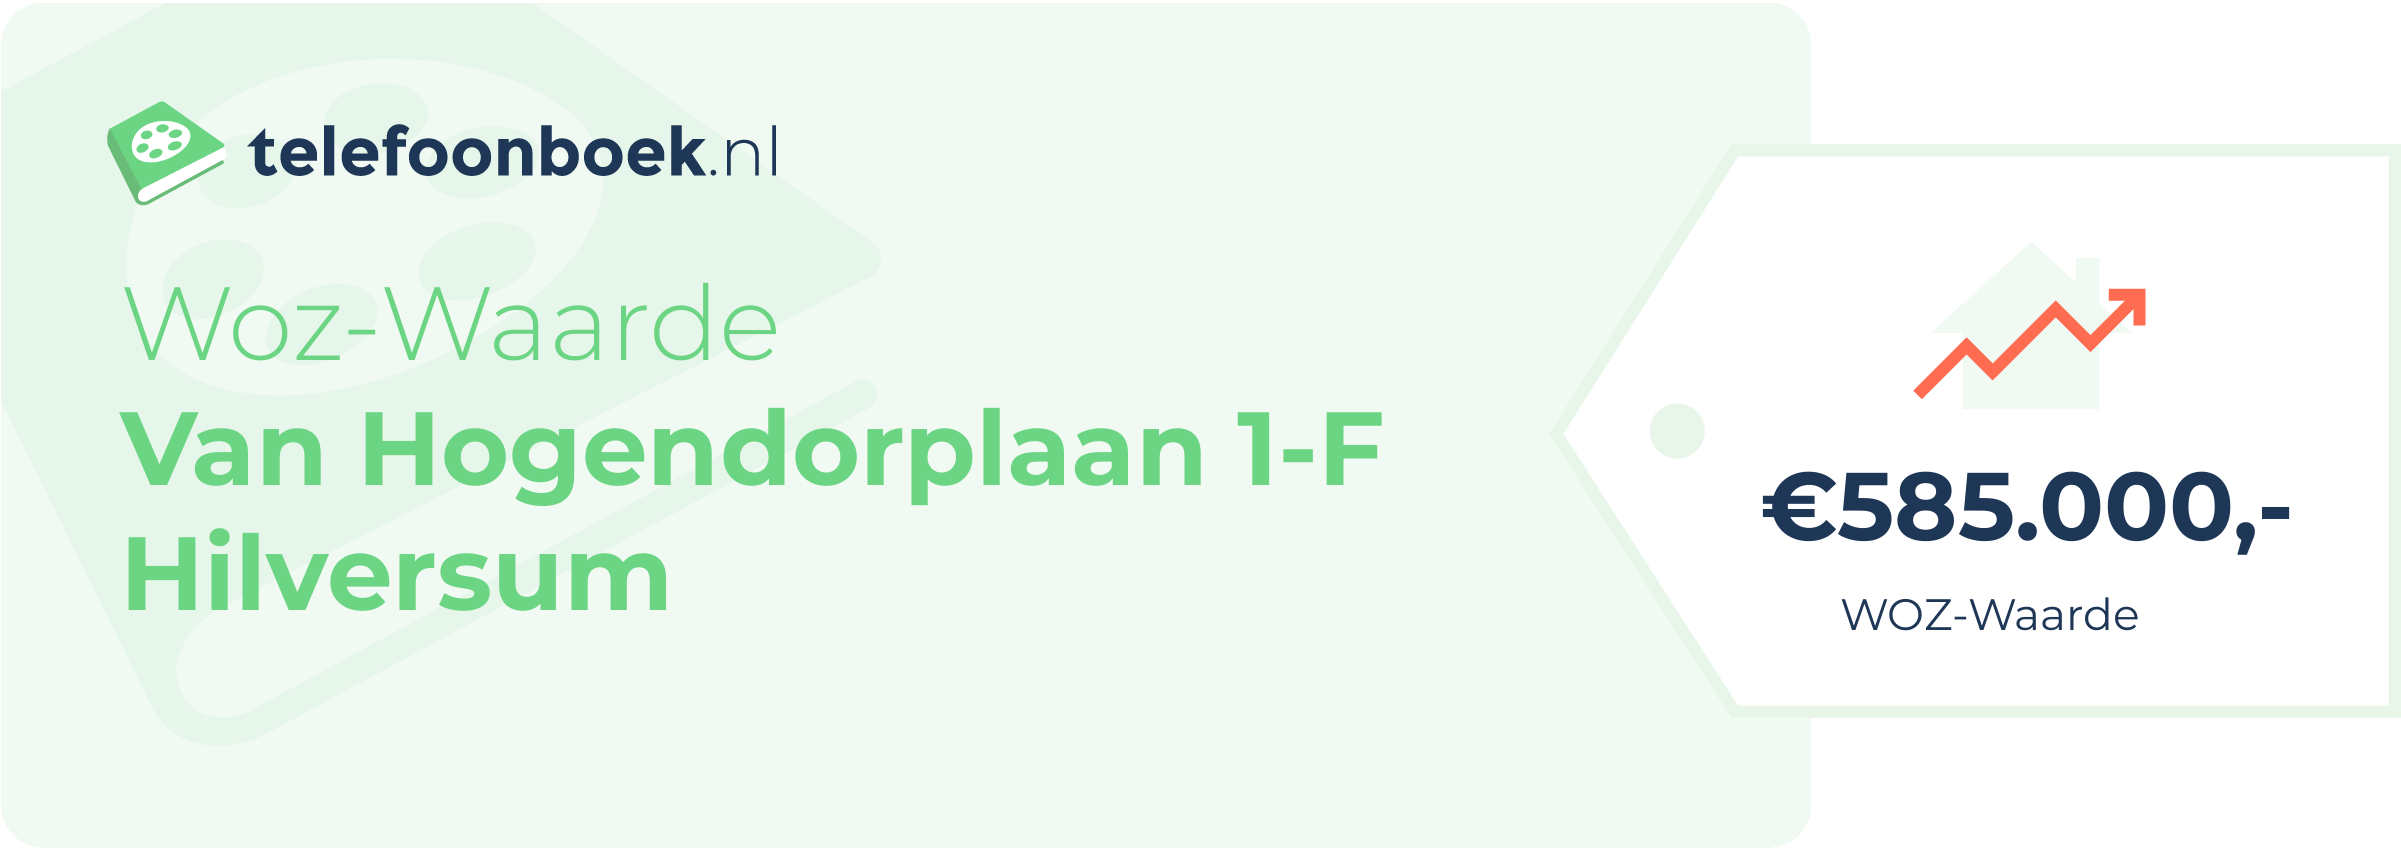 WOZ-waarde Van Hogendorplaan 1-F Hilversum